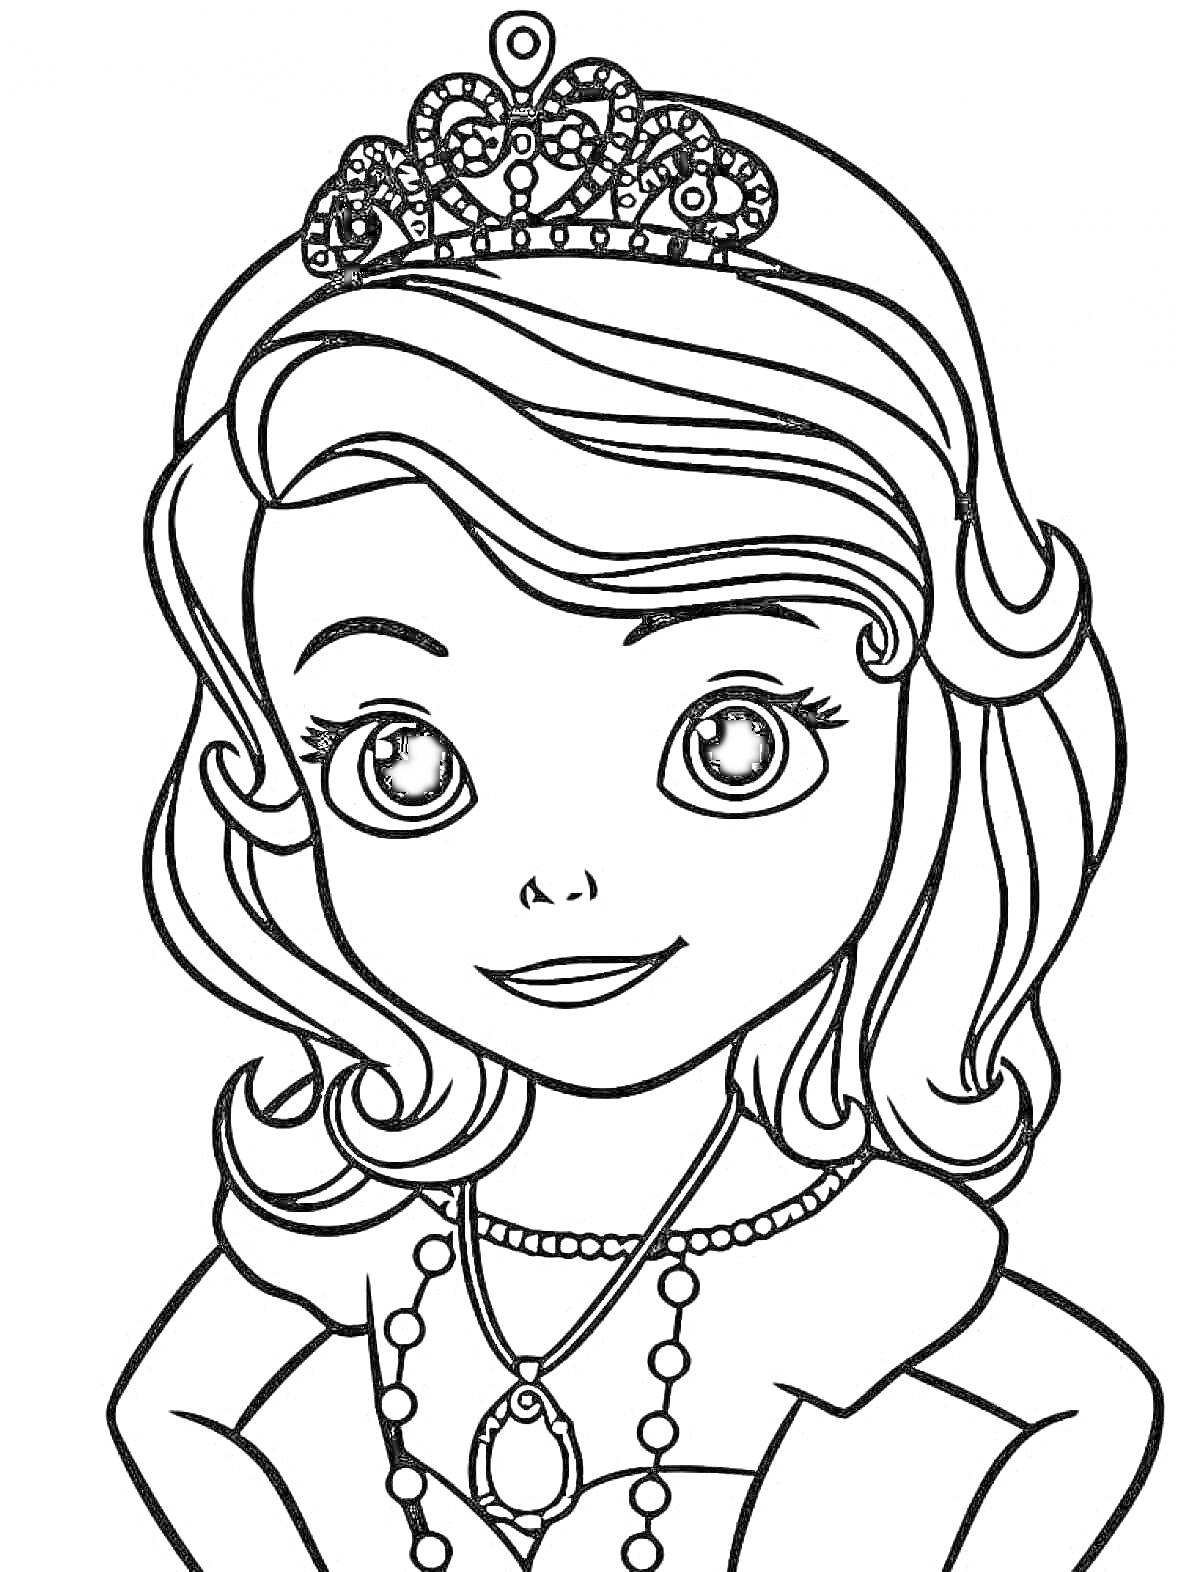 Раскраска Принцесса с тиарой и ожерельем